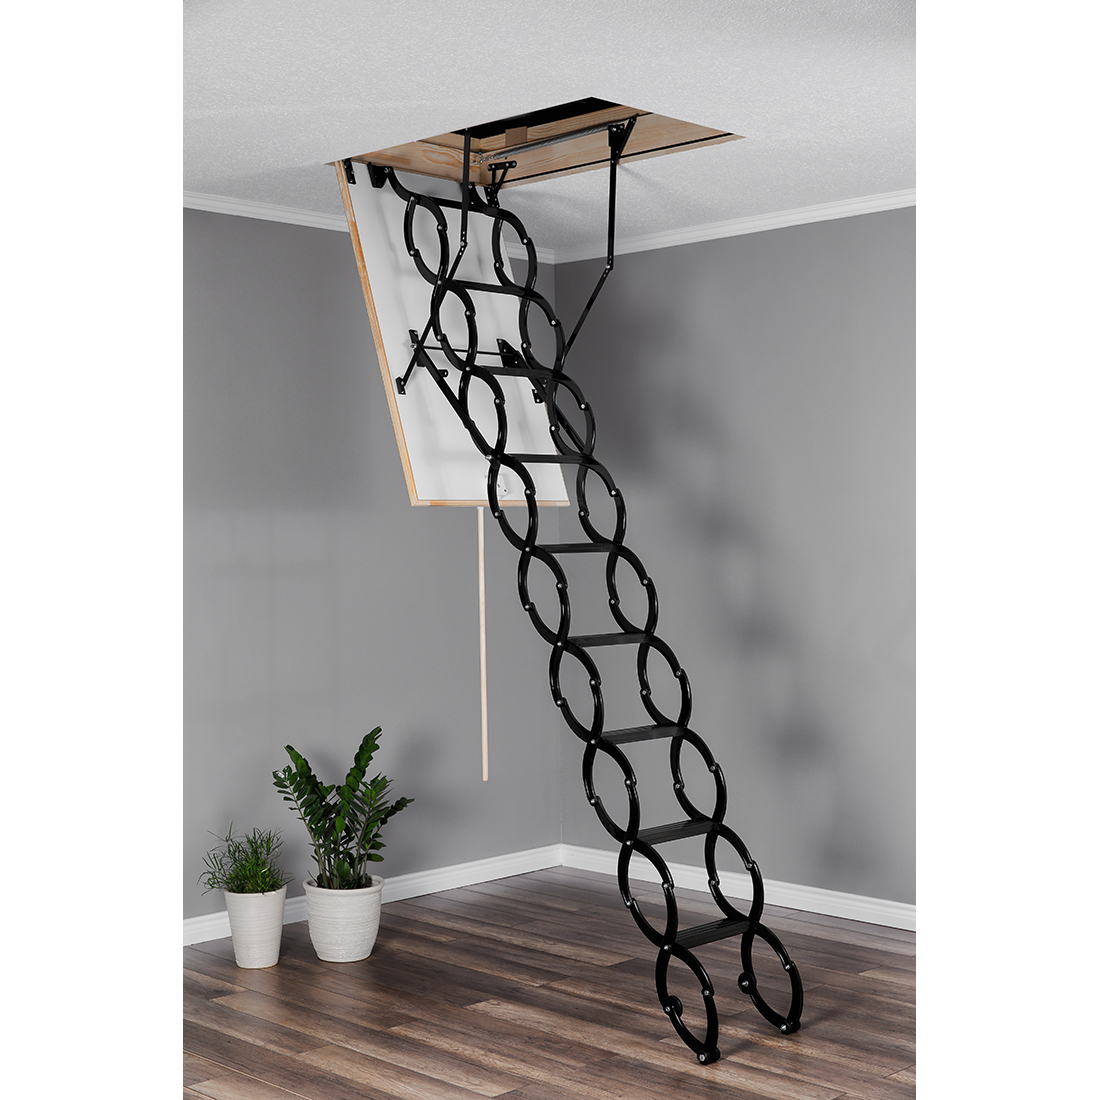 L-COMP Metal Scissor Attic Ladder 31.5" x 23.5" - Up to 10 feet